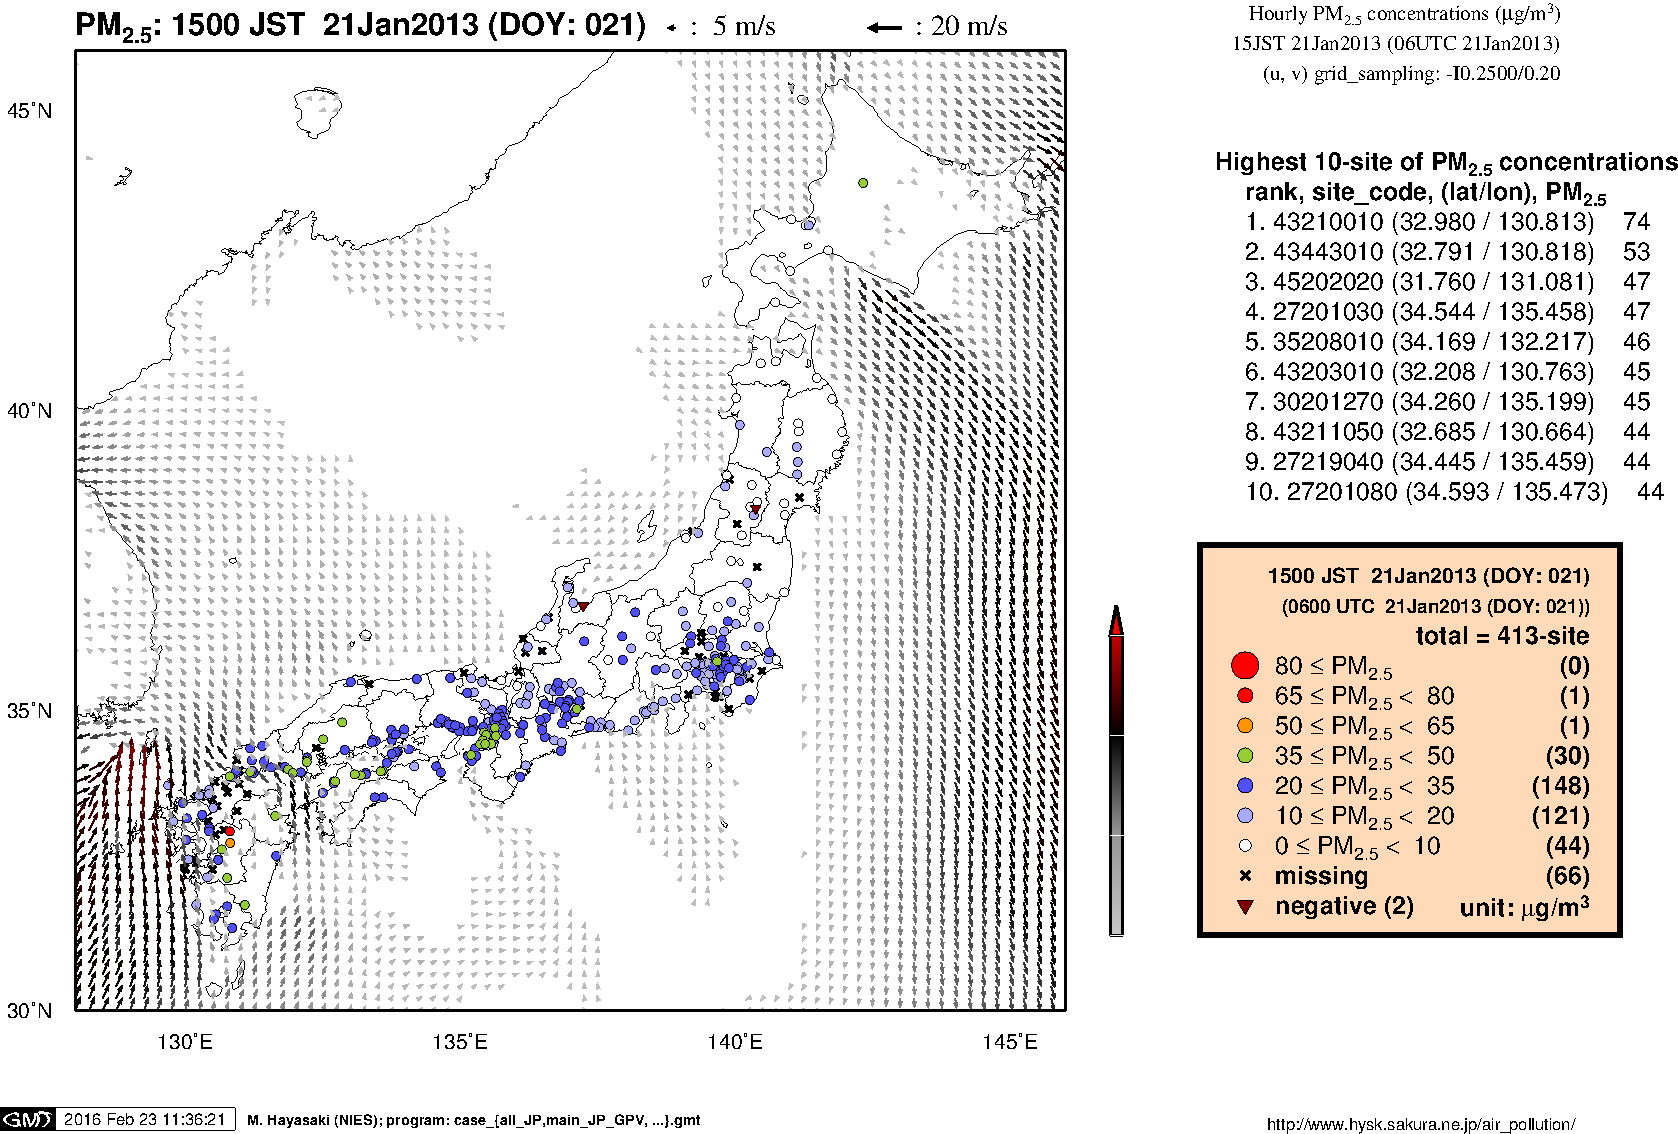 SPM concentration in Japan (15JST 21Jan2013)